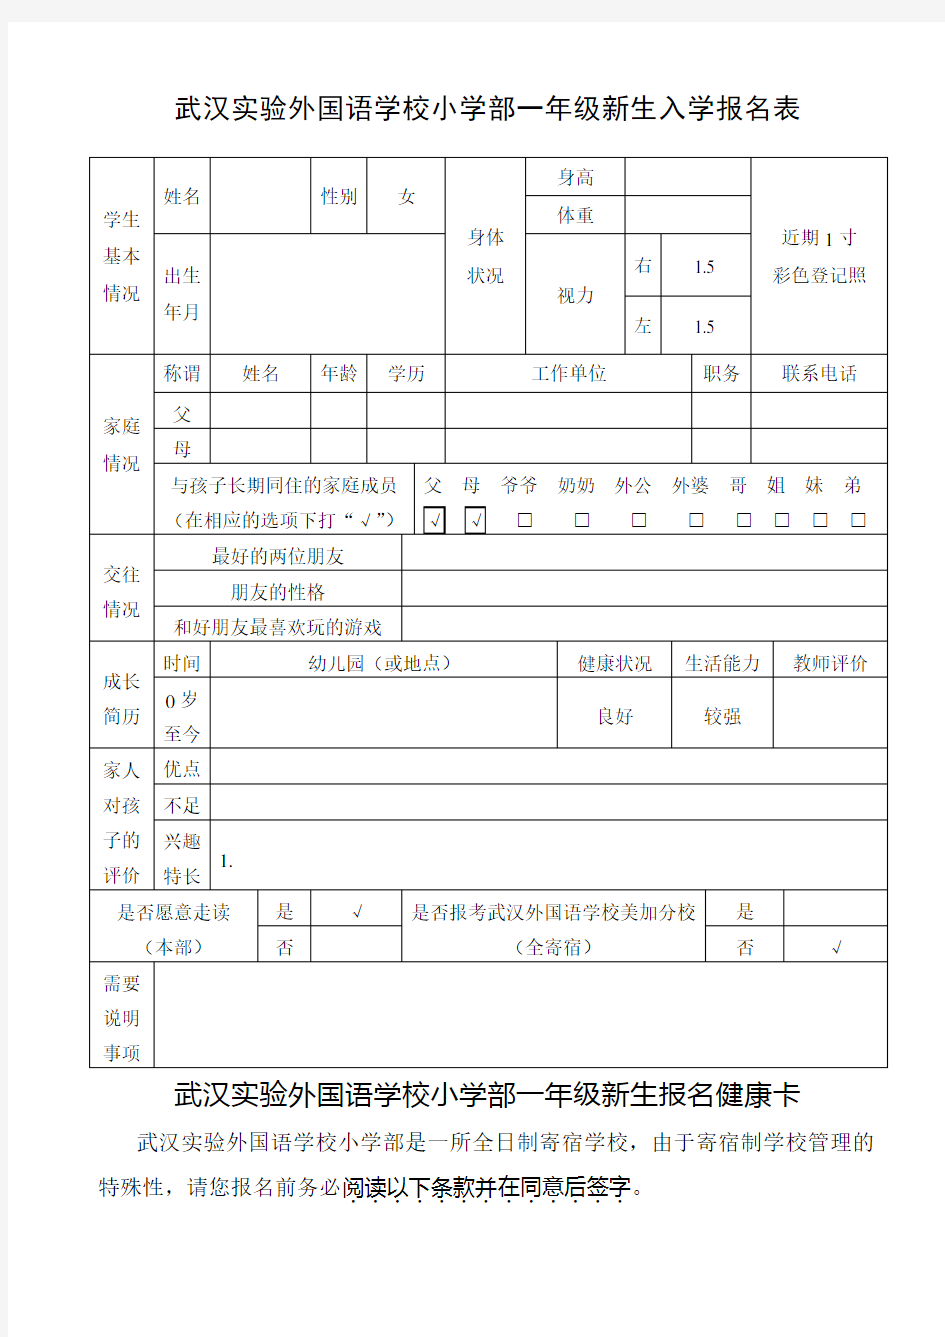 武汉实验外国语学校小学部一年级新生入学报名表